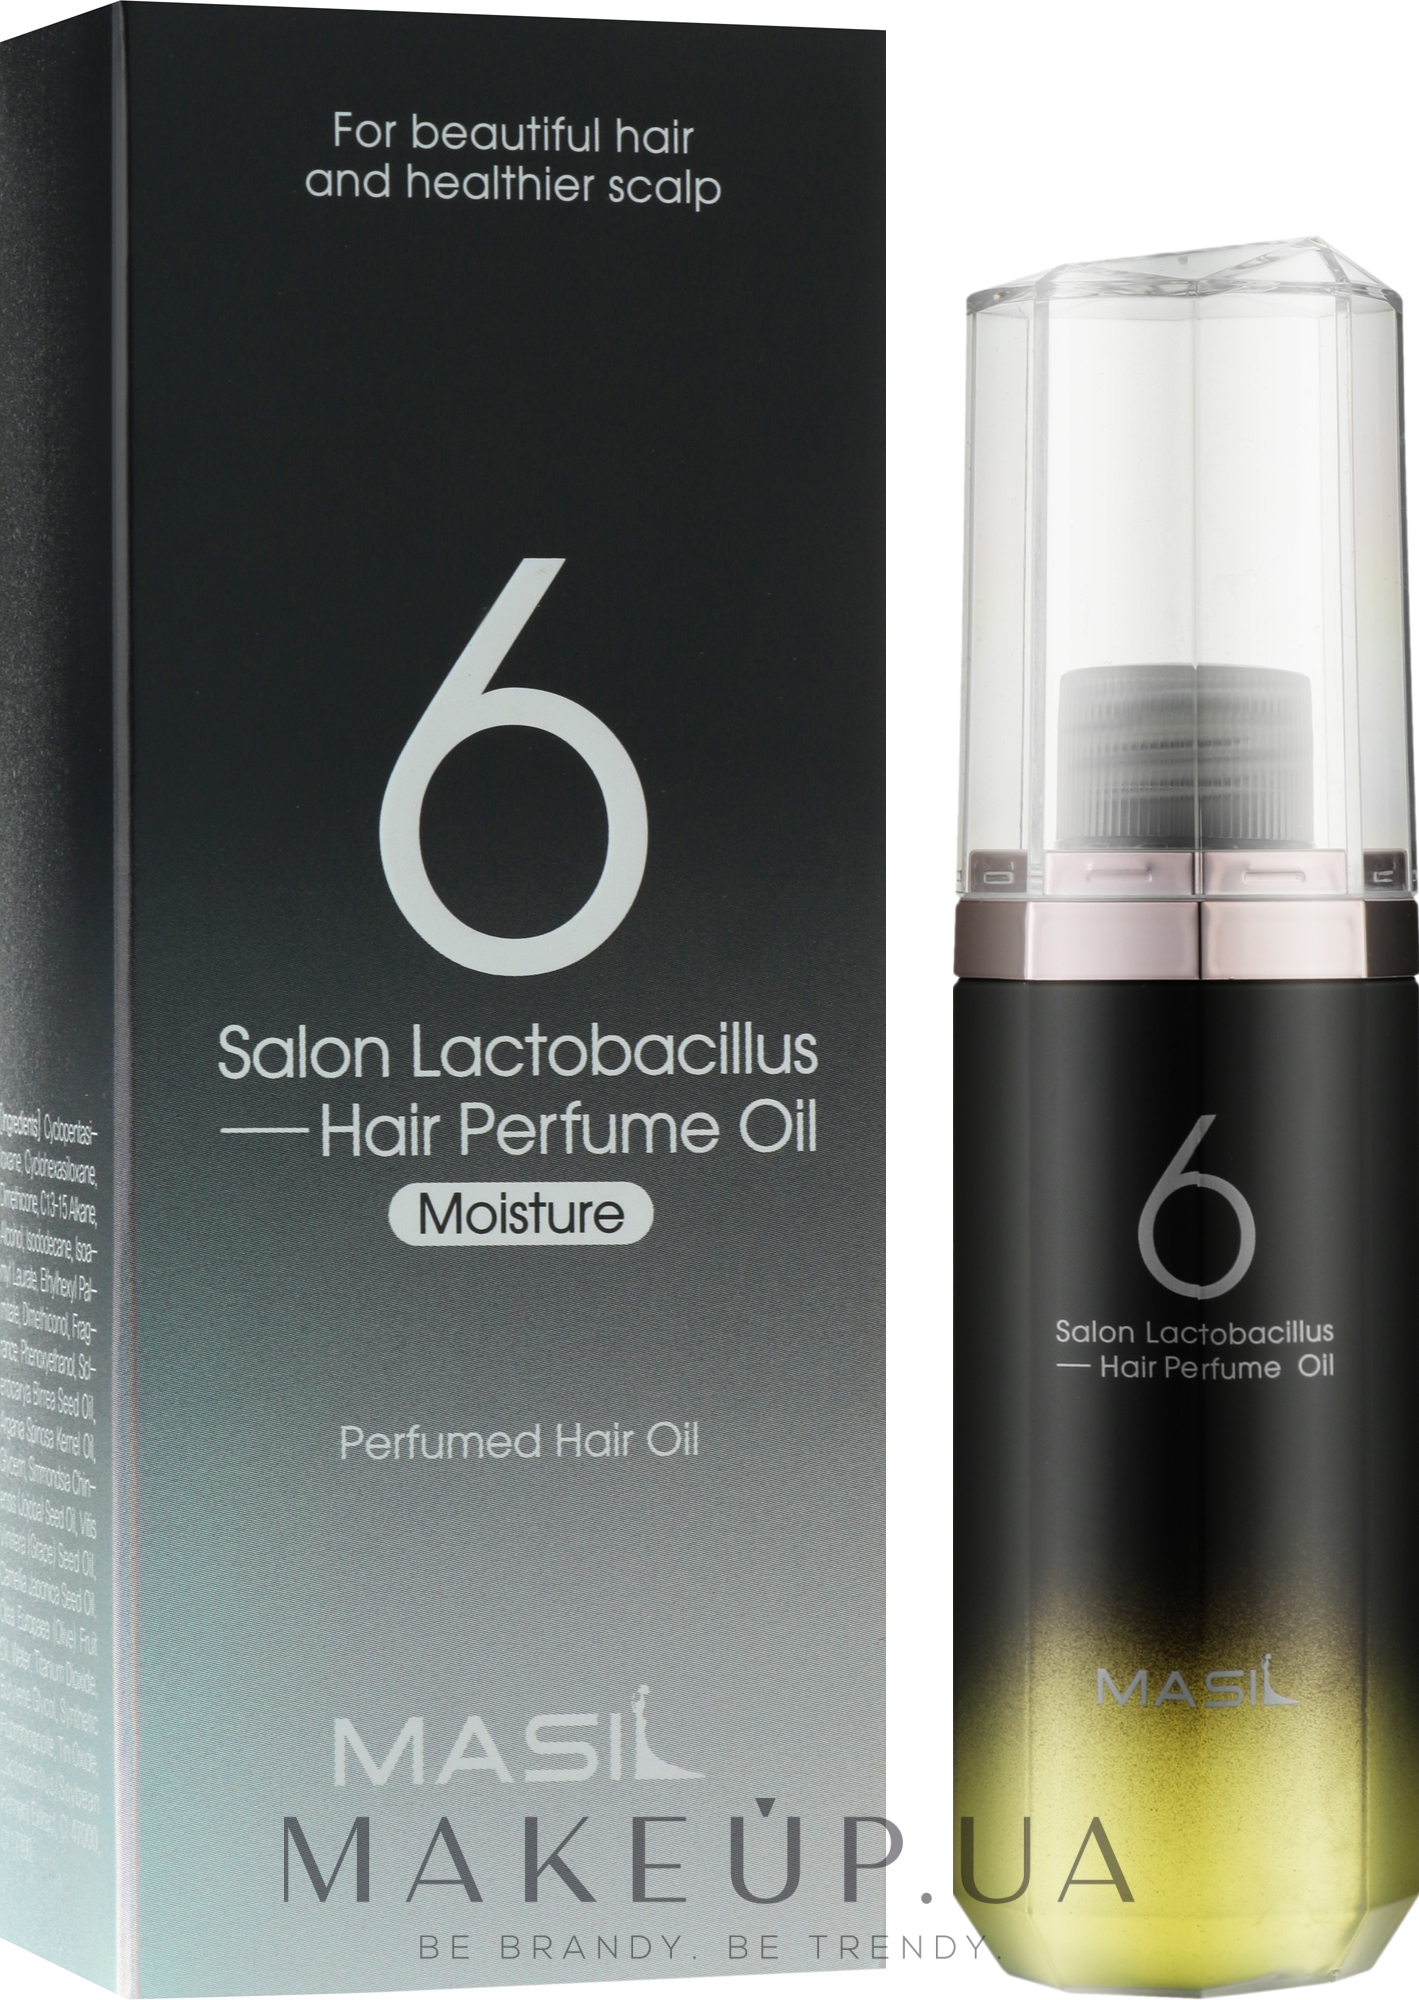 Зволожувальна парфумована олія для пошкодженого волосся  - Masil Salon Lactobacillus Hair Perfume Oil Moisture — фото 66ml